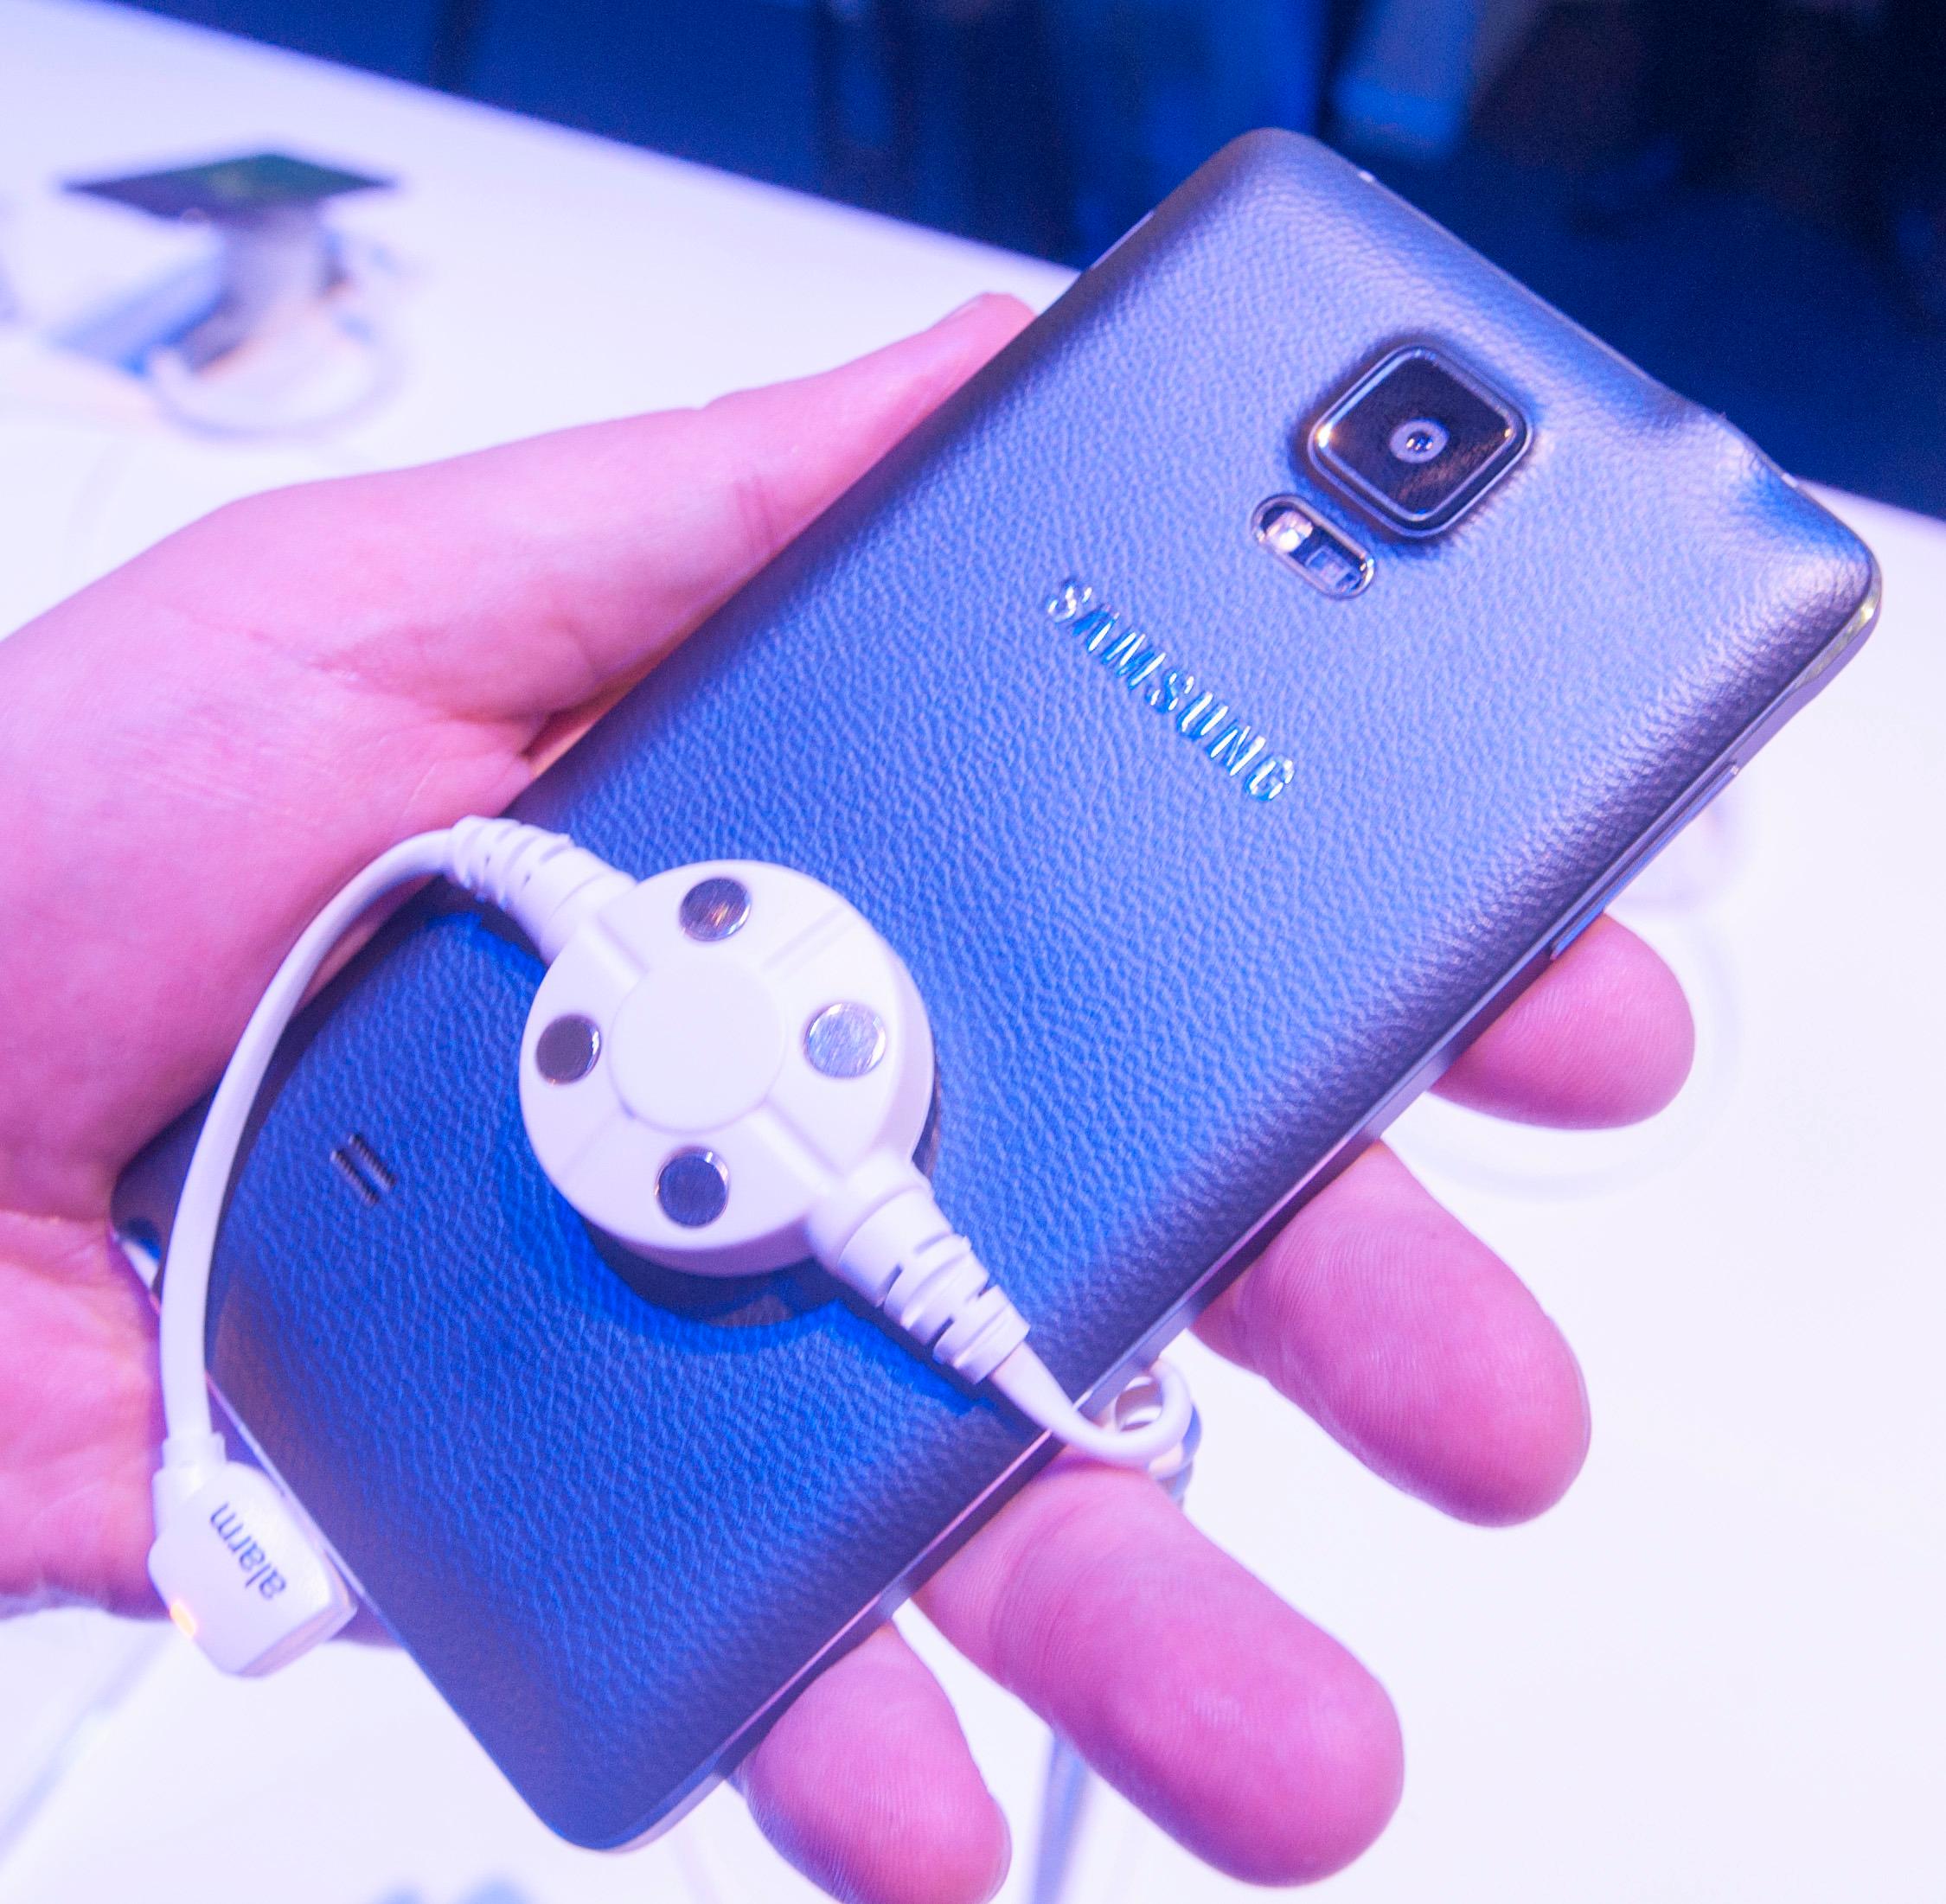 Slik ser den sorte Galaxy Note 4-modellen ut på baksiden. Fingeravtrykksensoren kan brukes som utløserknapp for frontkameraet.Foto: Finn Jarle Kvalheim, Amobil.no